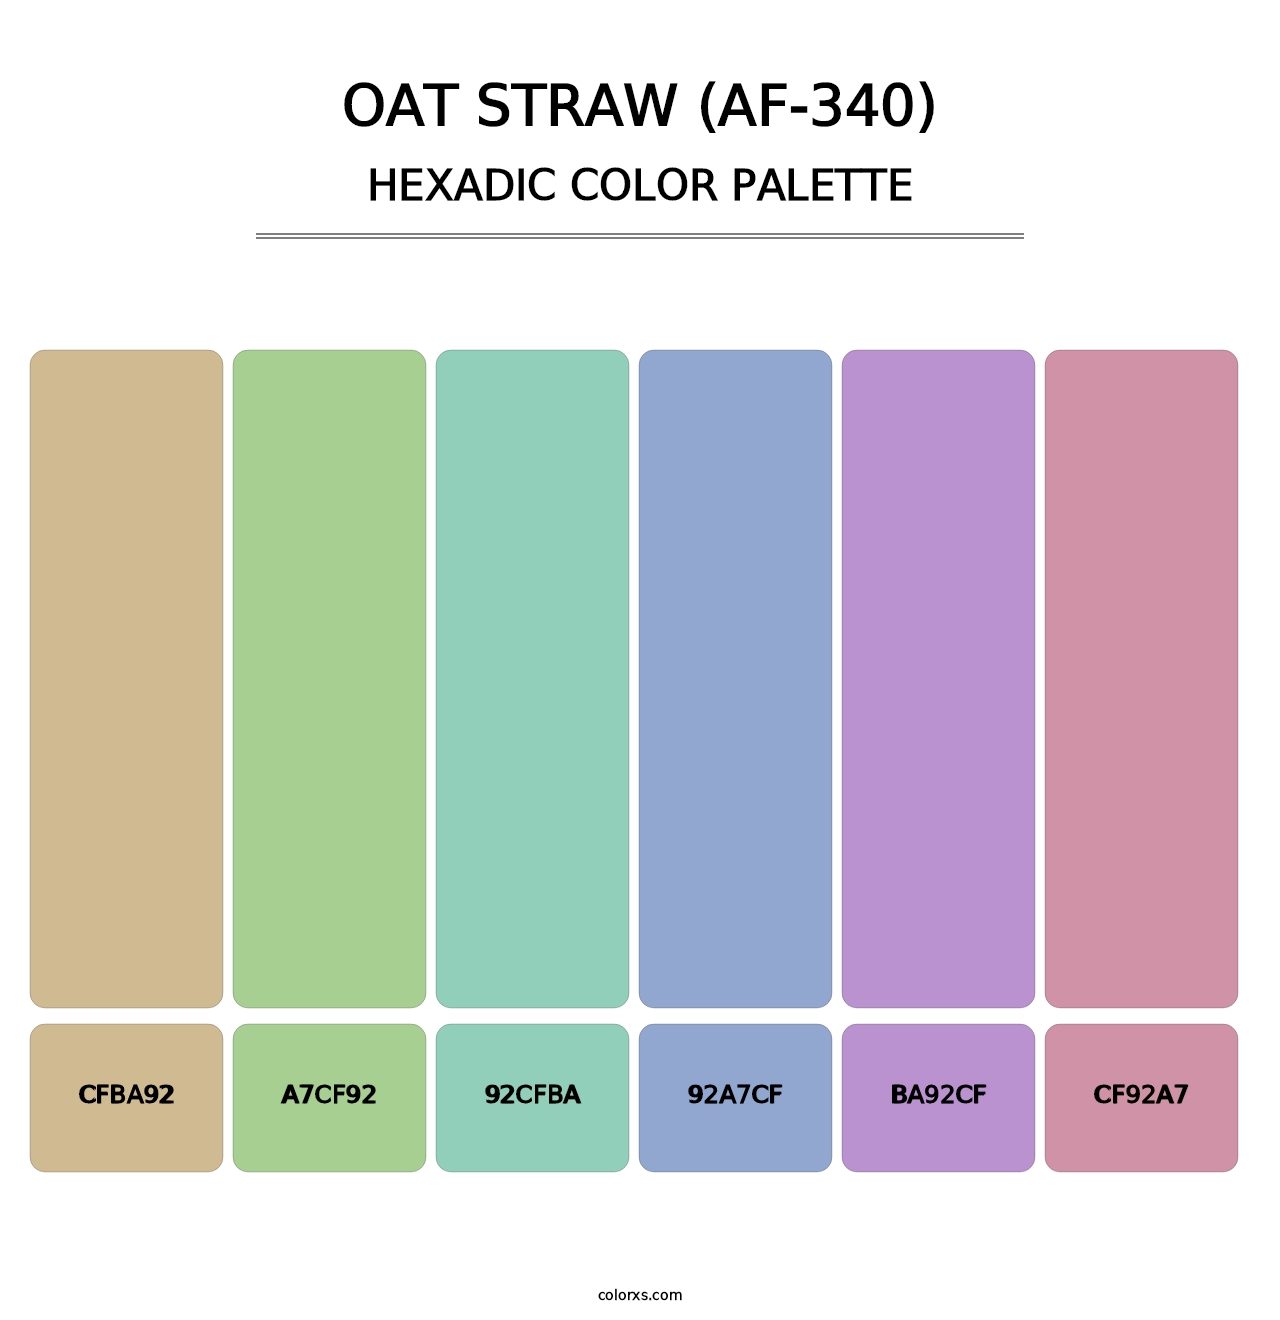 Oat Straw (AF-340) - Hexadic Color Palette